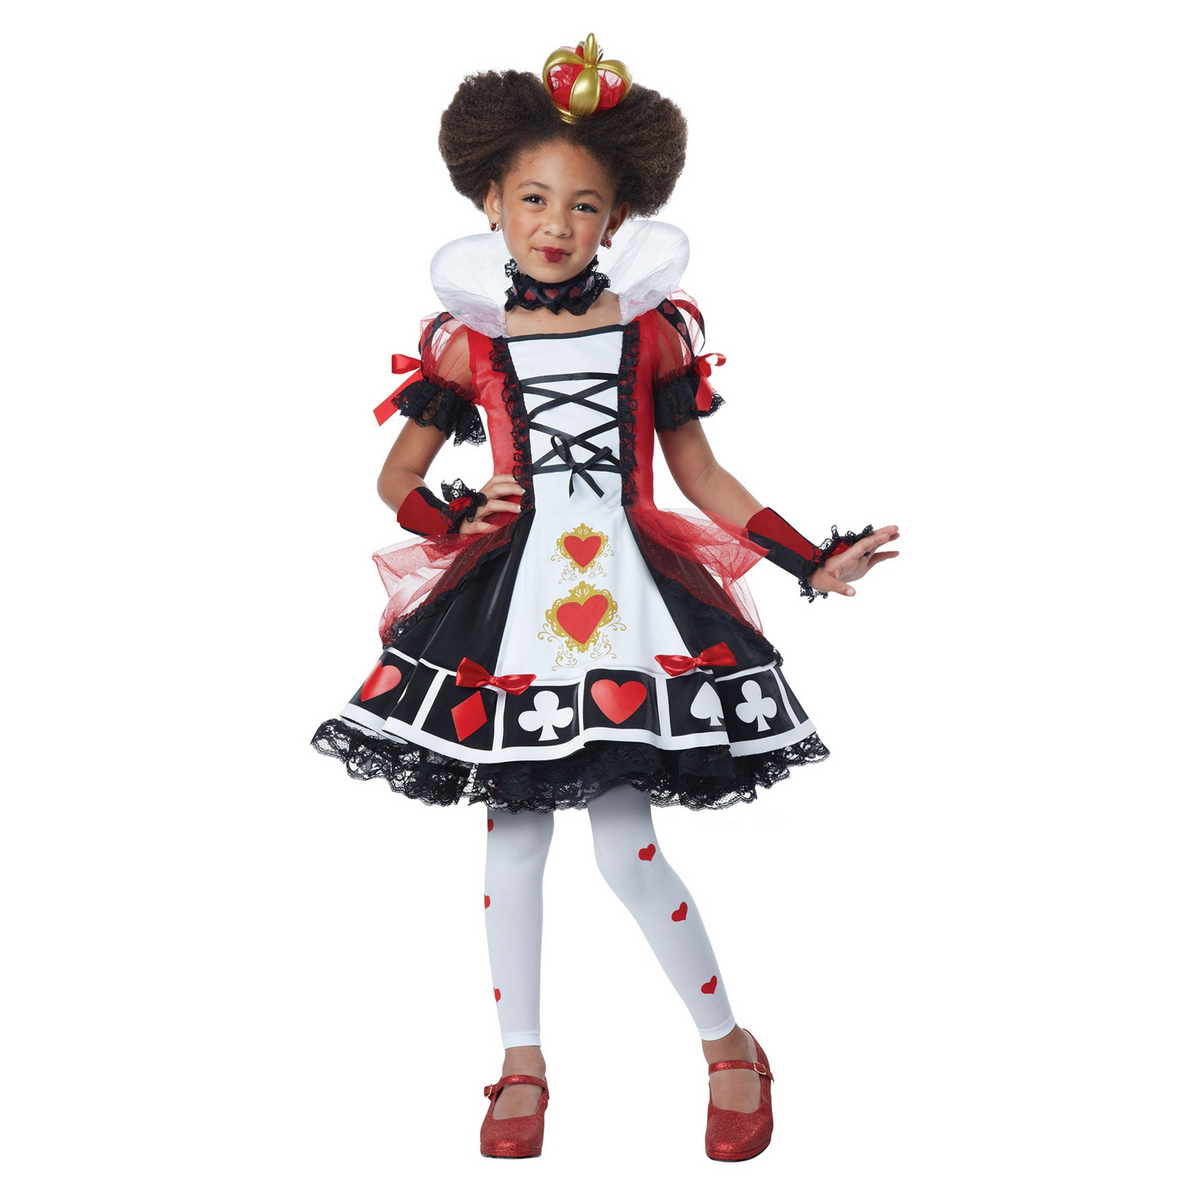 Deluxe Queen of Hearts Kids Costume